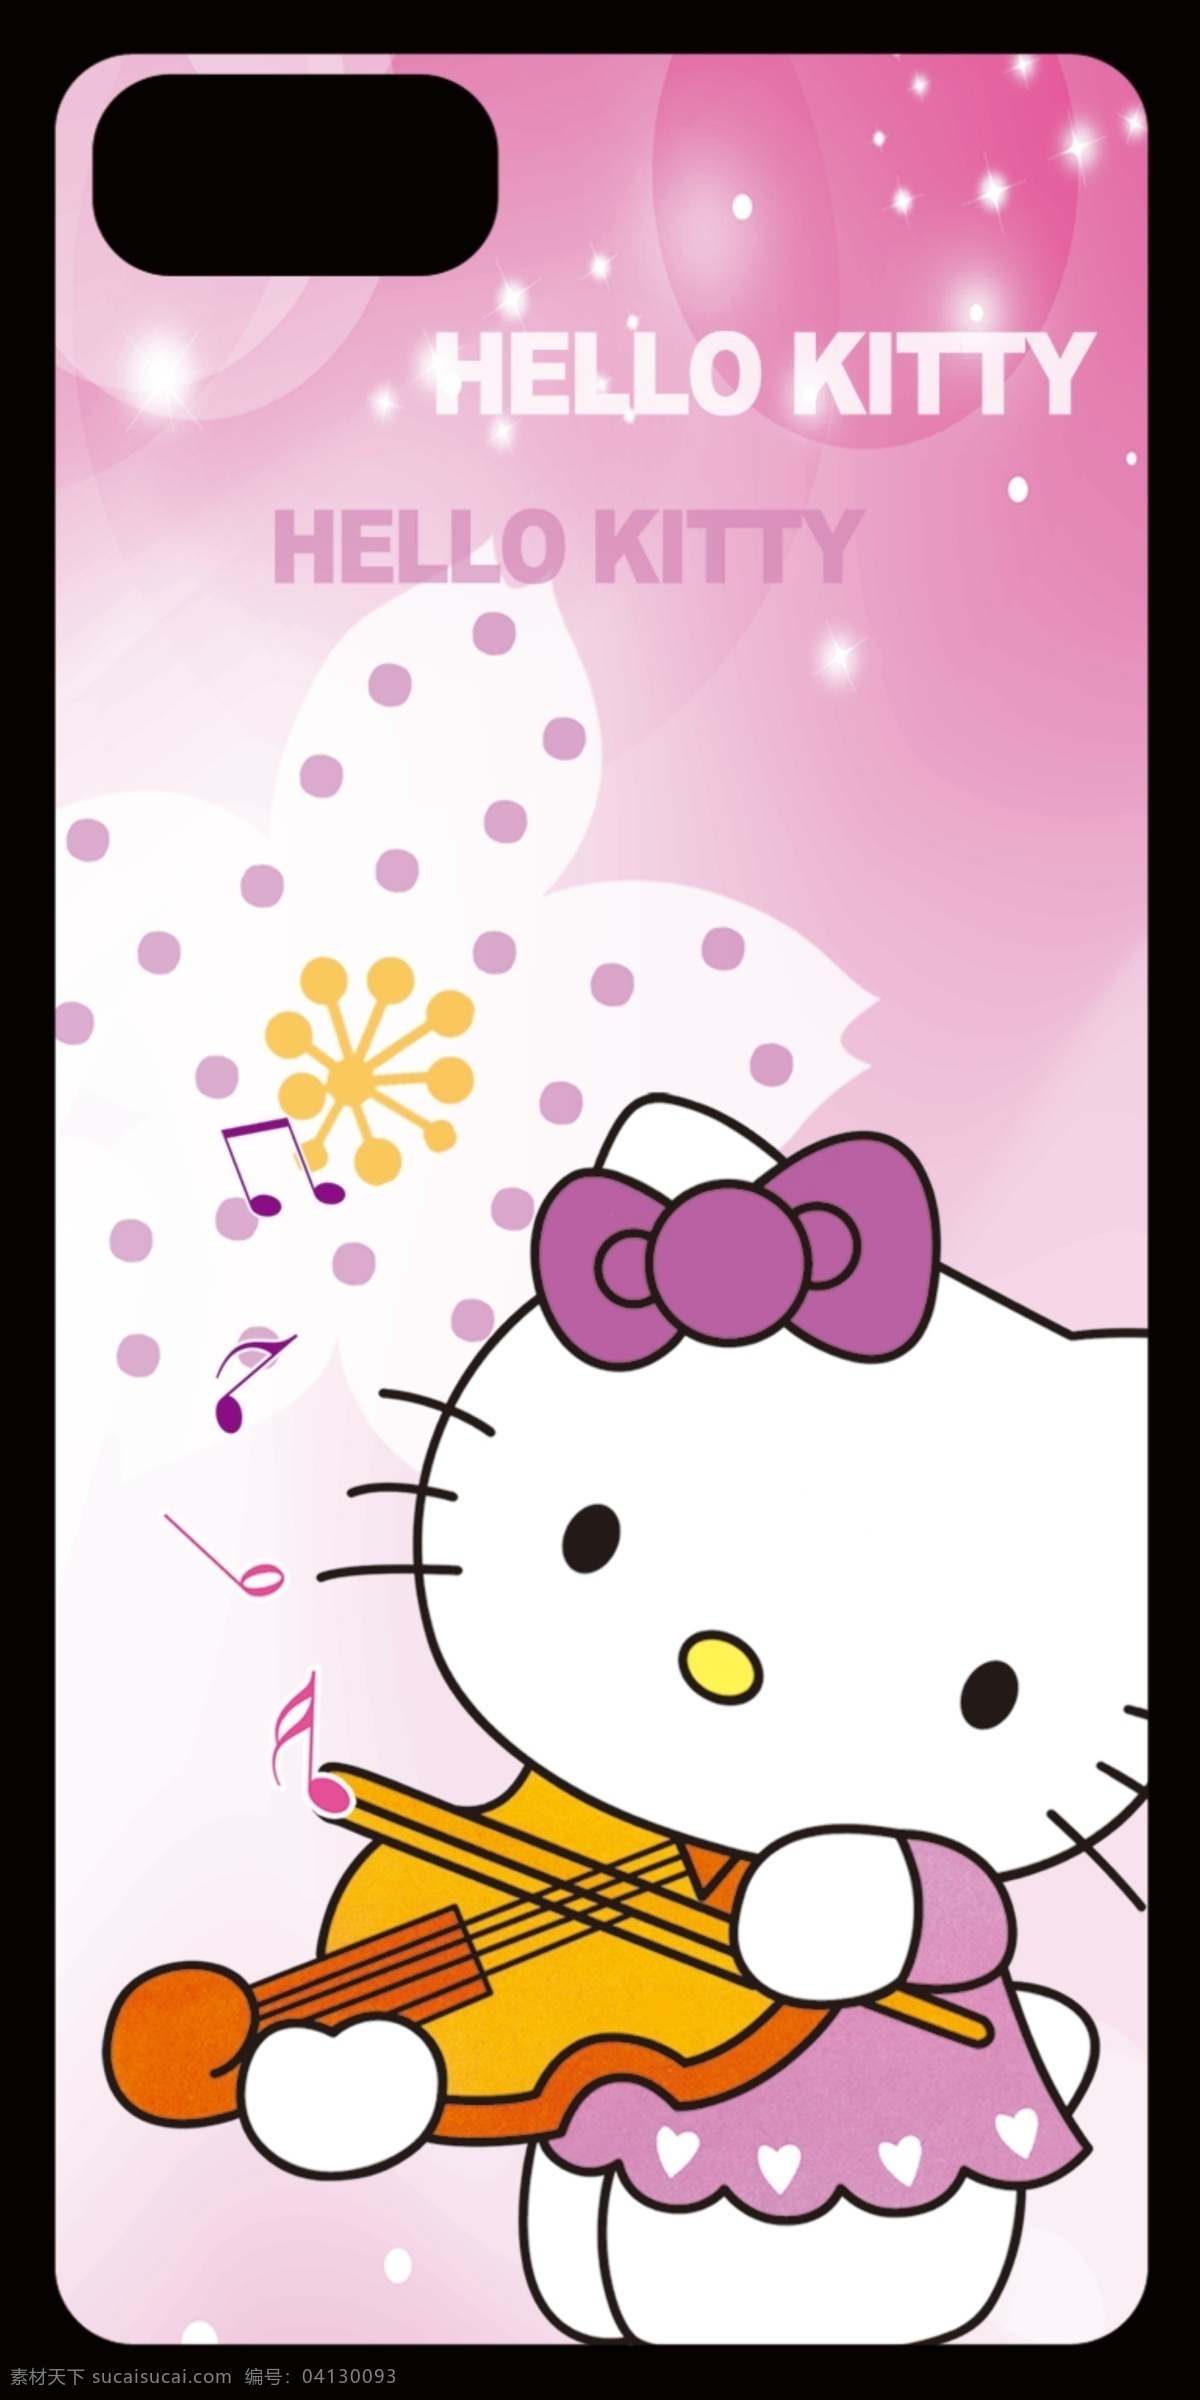 小花 猫 手机壳 4s 5s 卡 卡通背景 卡通动物 卡通设计 苹果手机 i5 i4 猫咪图案 卡通手机壳 psd源文件